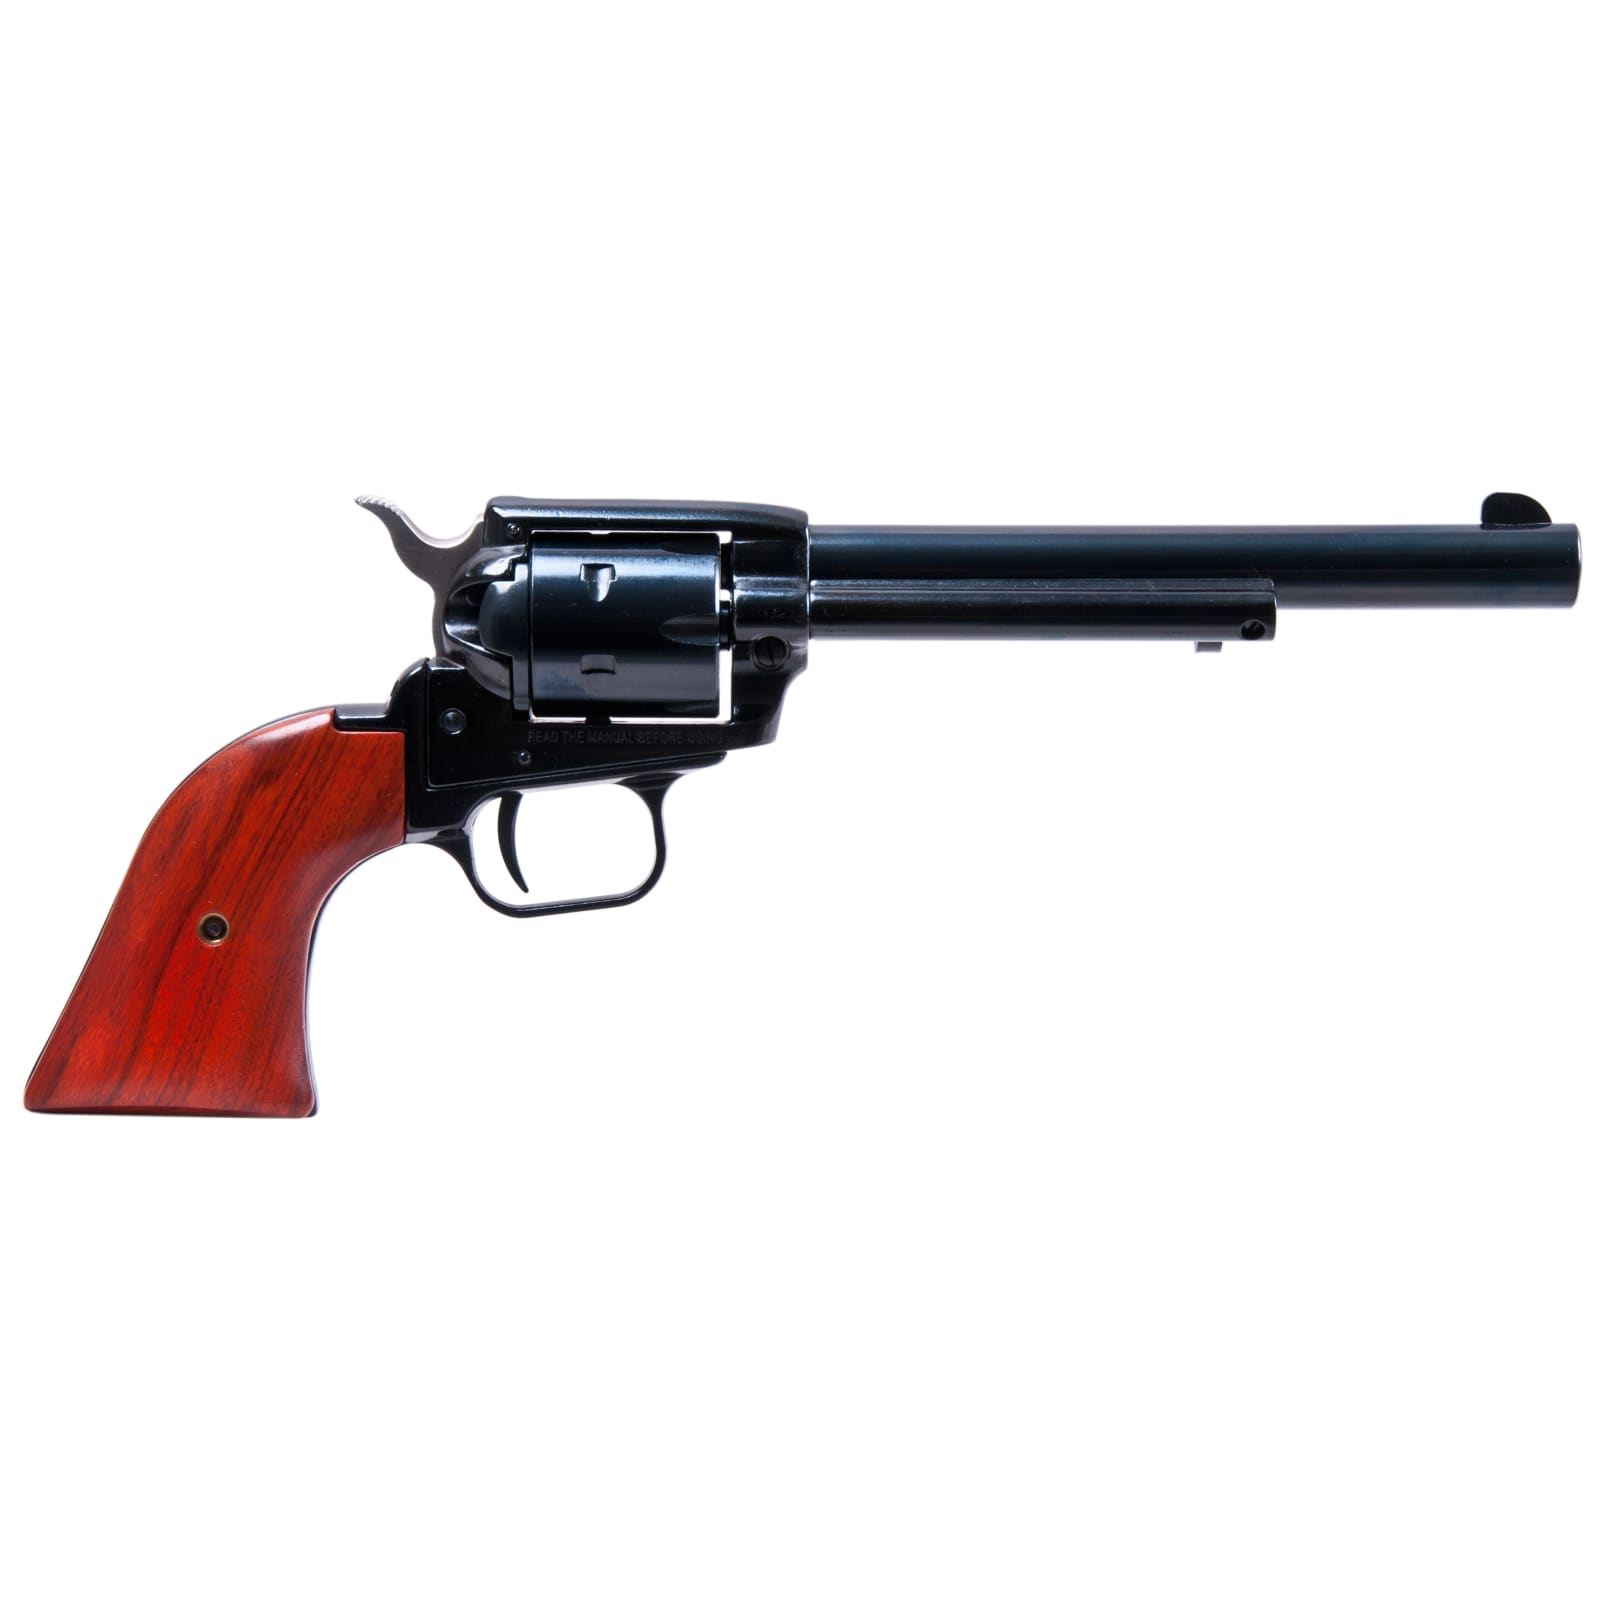 The .22 Revolver Kit Gun - Fiddleback Forge